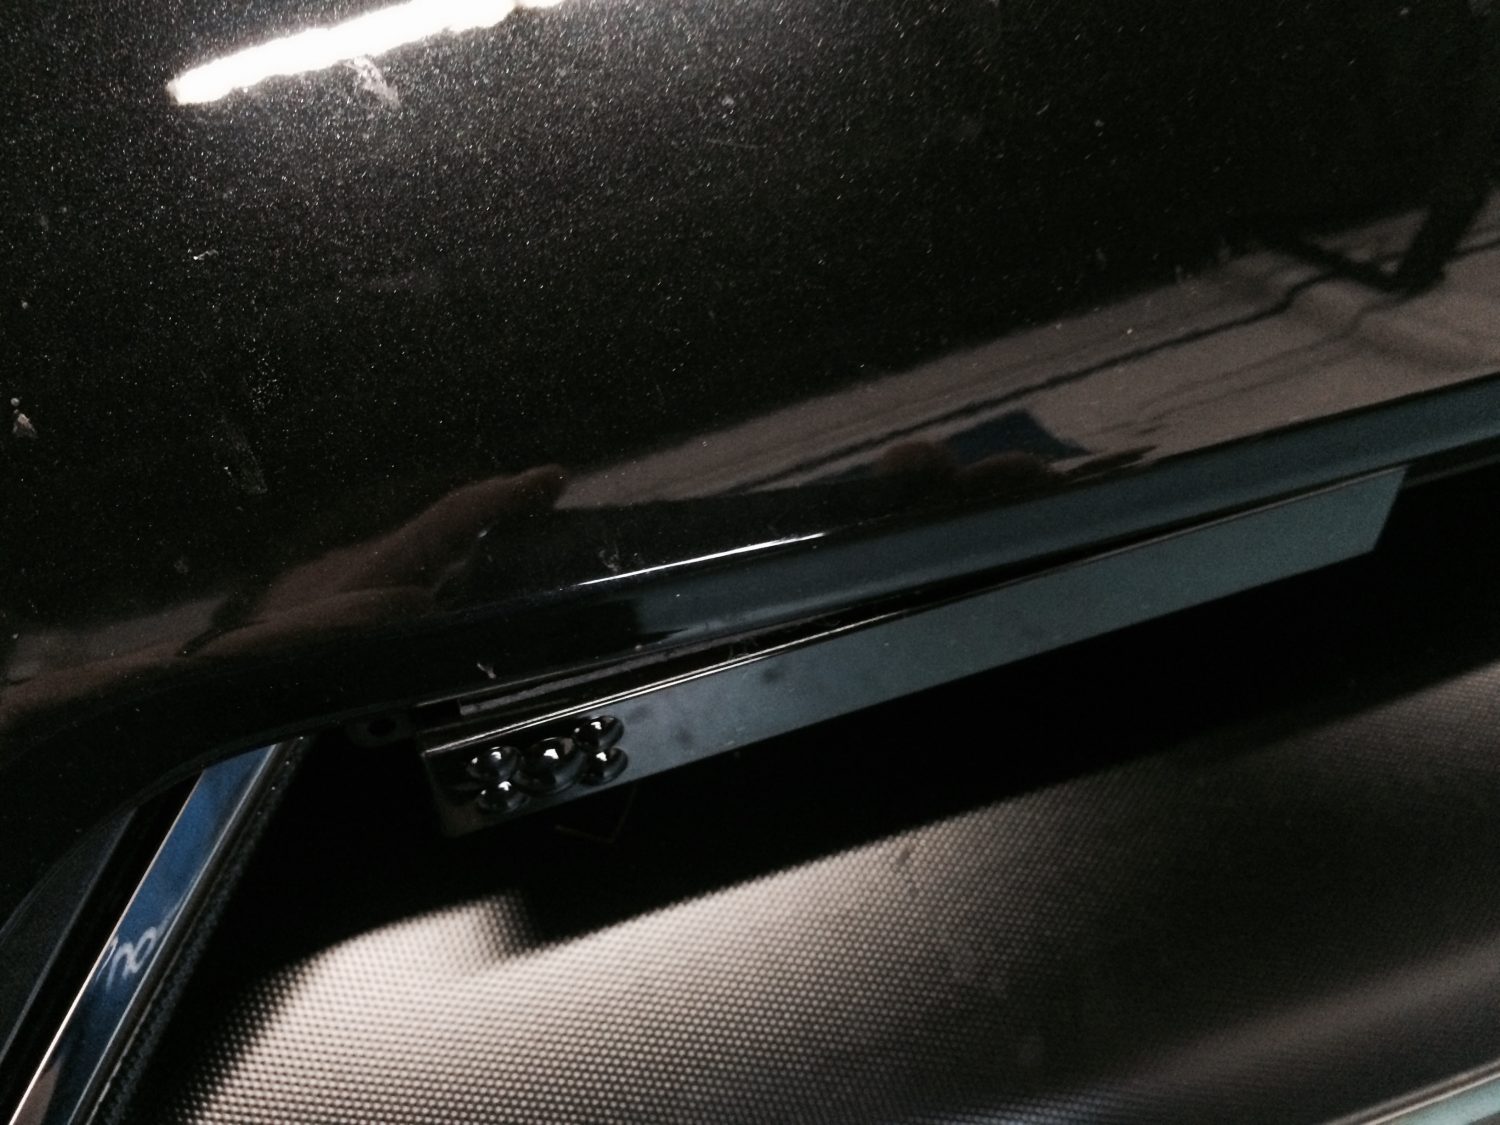 K40 laser defuser closeup on a 2015 Nissan GT-R